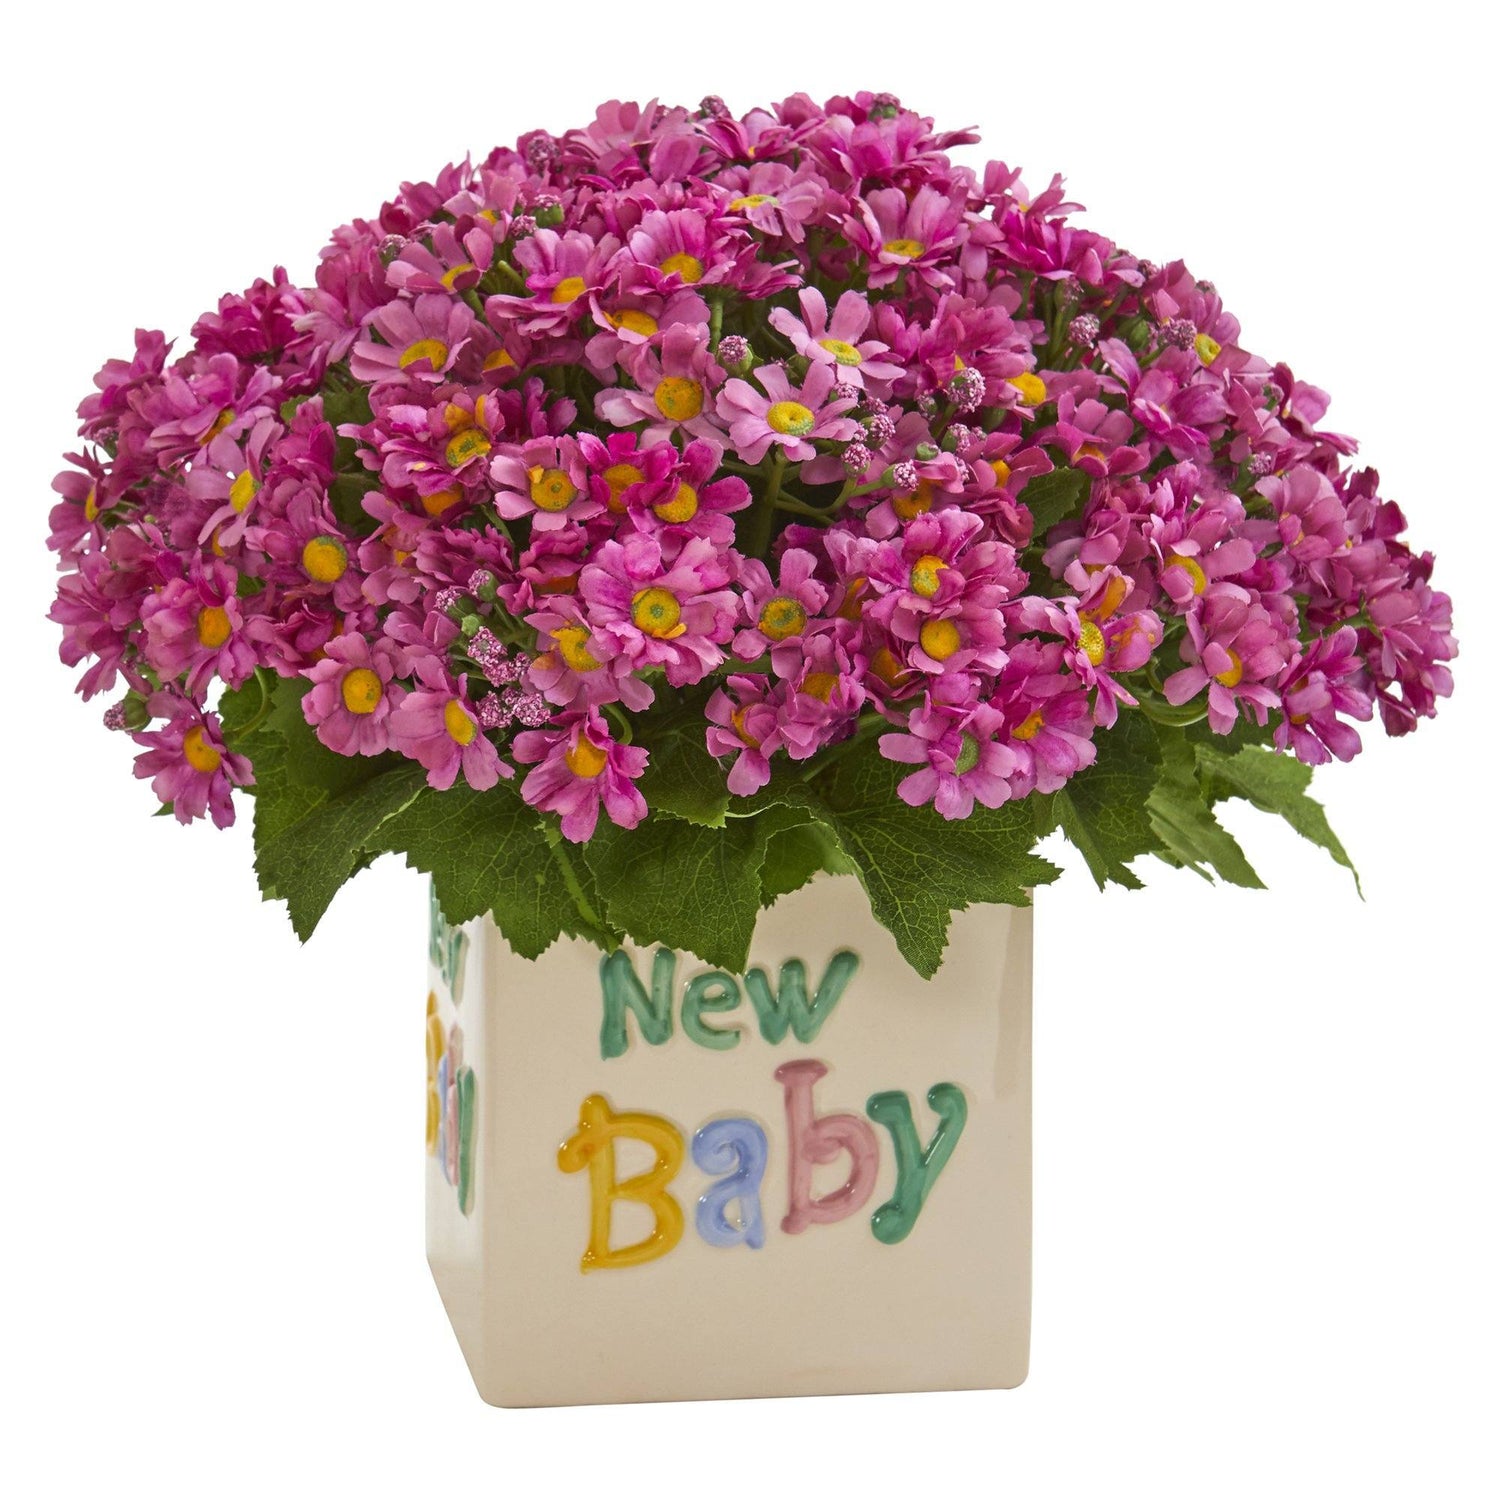 13” Daisy Artificial Arrangement in “New Baby” Vase